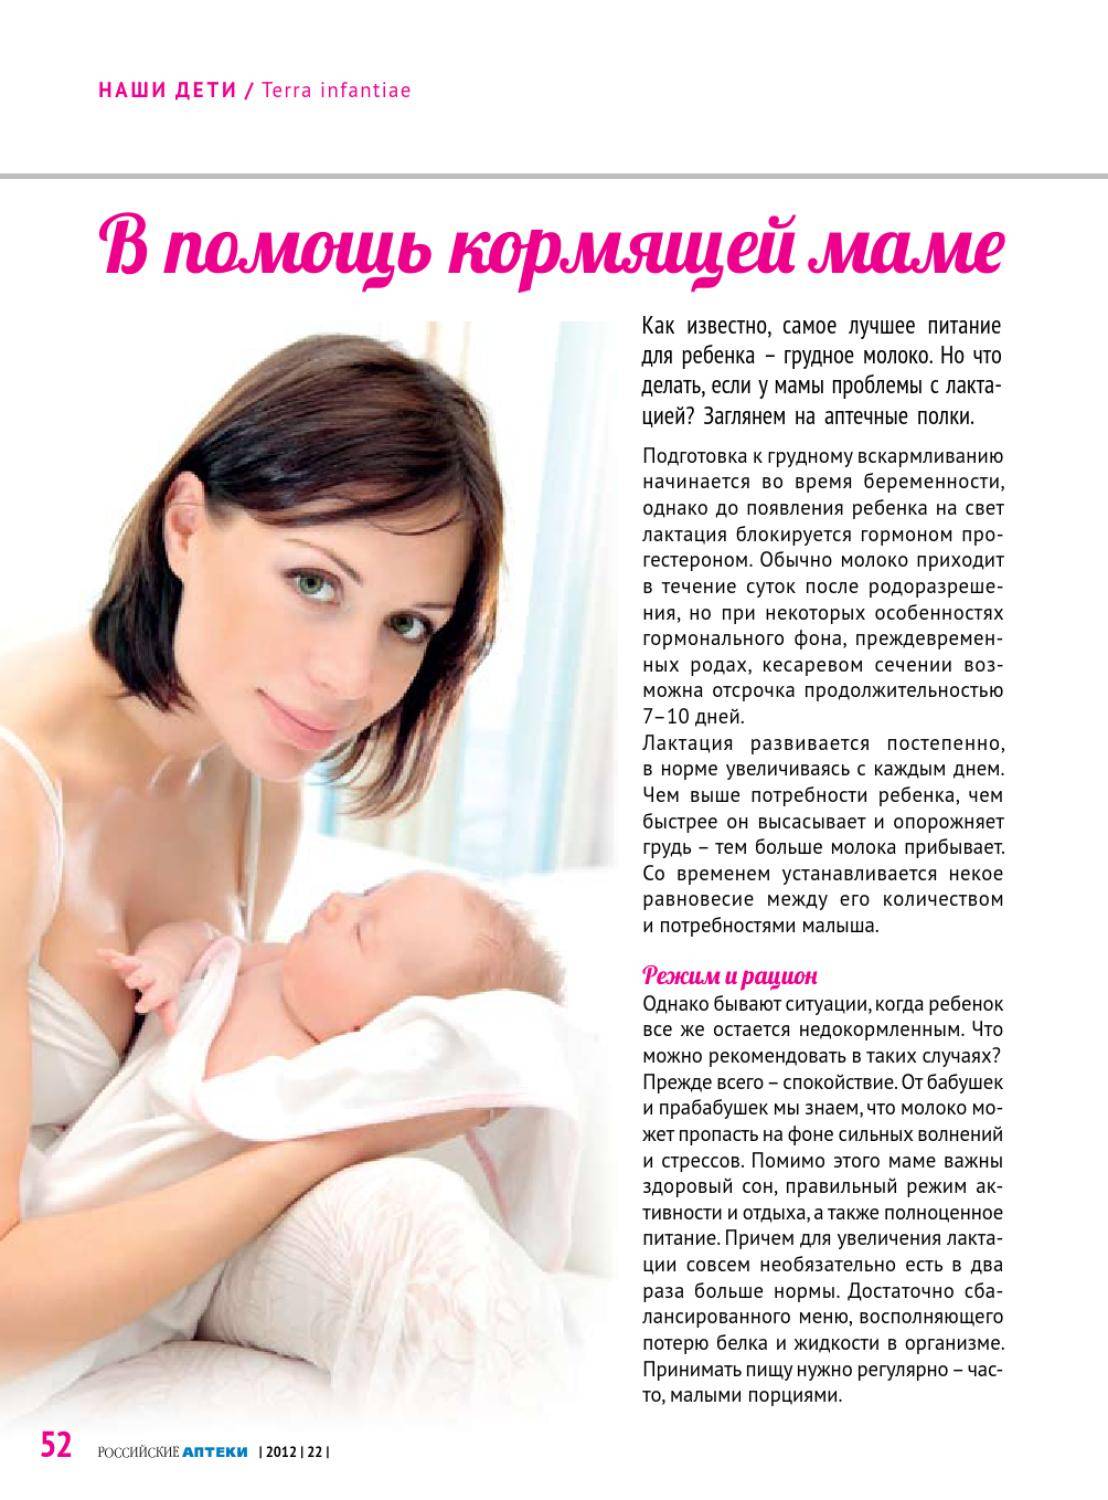 Застой молока у женщин после родов при кормлении грудью: причины и лечение